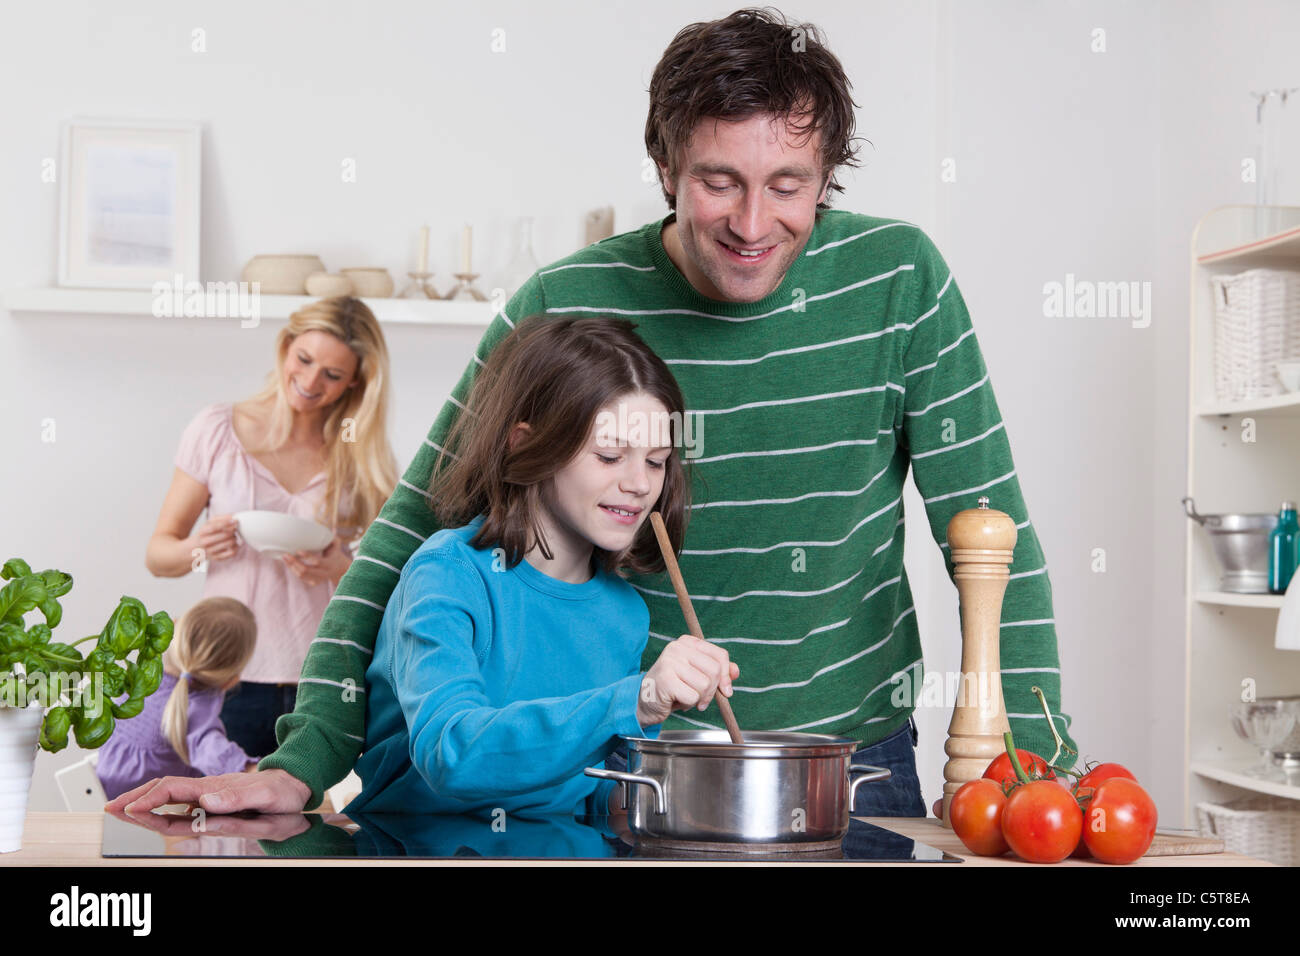 Germany, Bavaria, Munich, fils de cuisiner avec le père, la mère et la fille en arrière-plan Banque D'Images